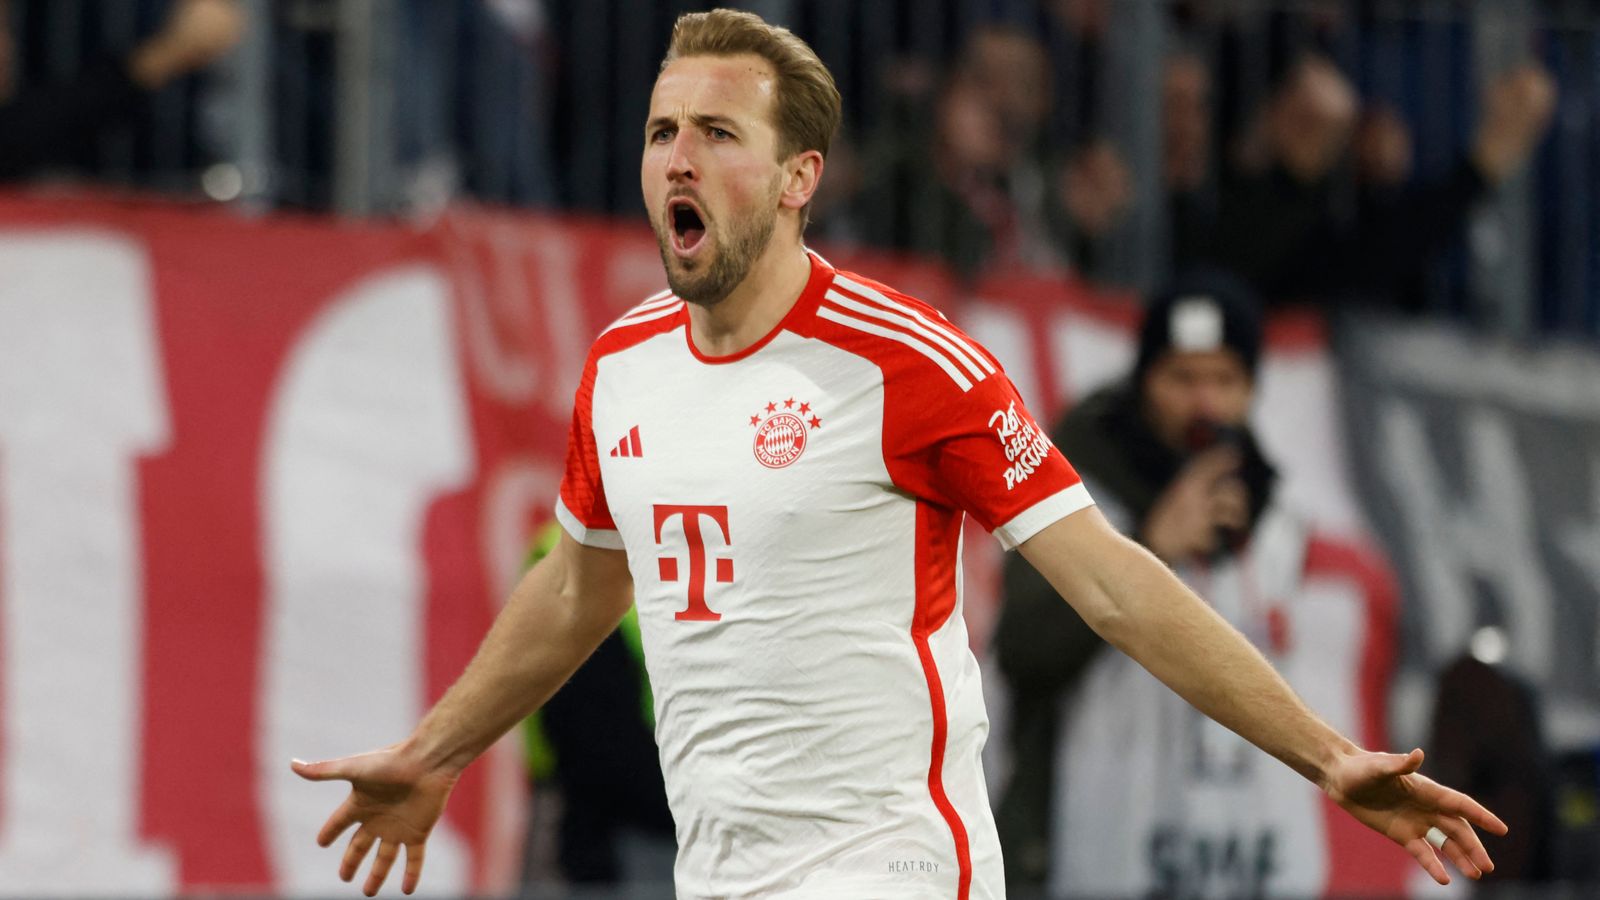 Bayern Munich 3-0 Stuttgart : Harry Kane marque deux buts pour porter son total en Bundesliga à 20 buts |  actualités du football